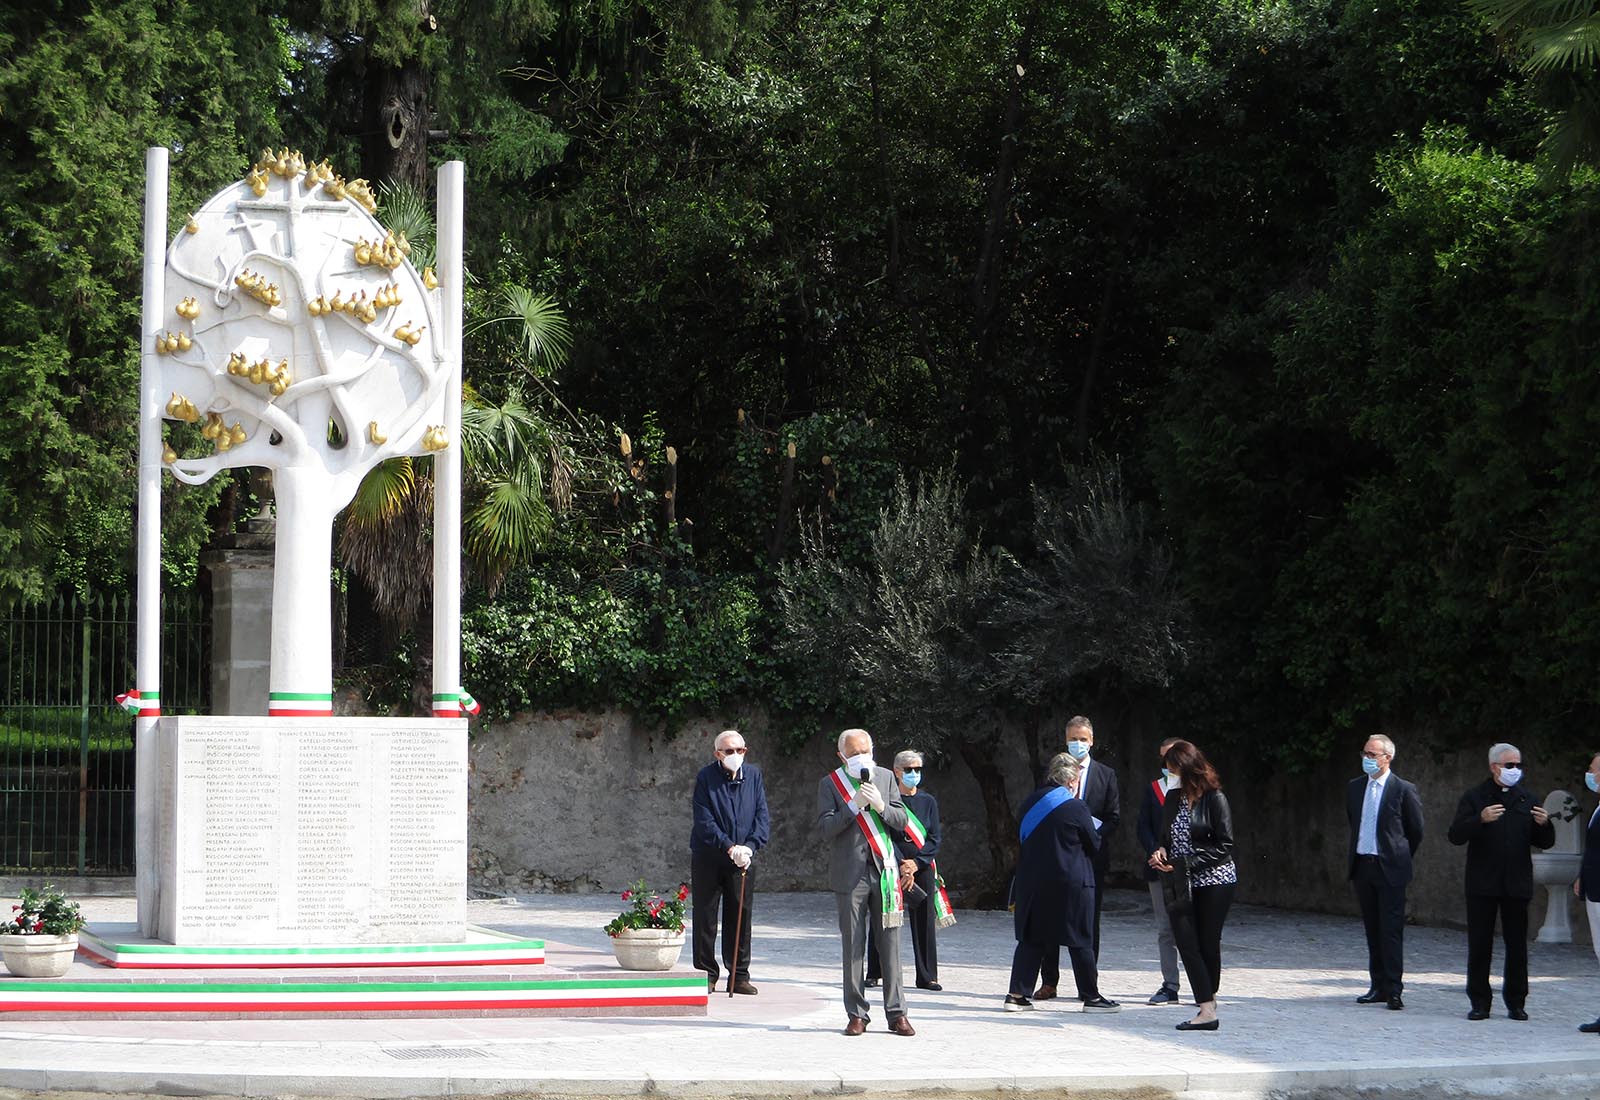 Piazza Libertà in Appiano Gentile - Celebration of the centenary